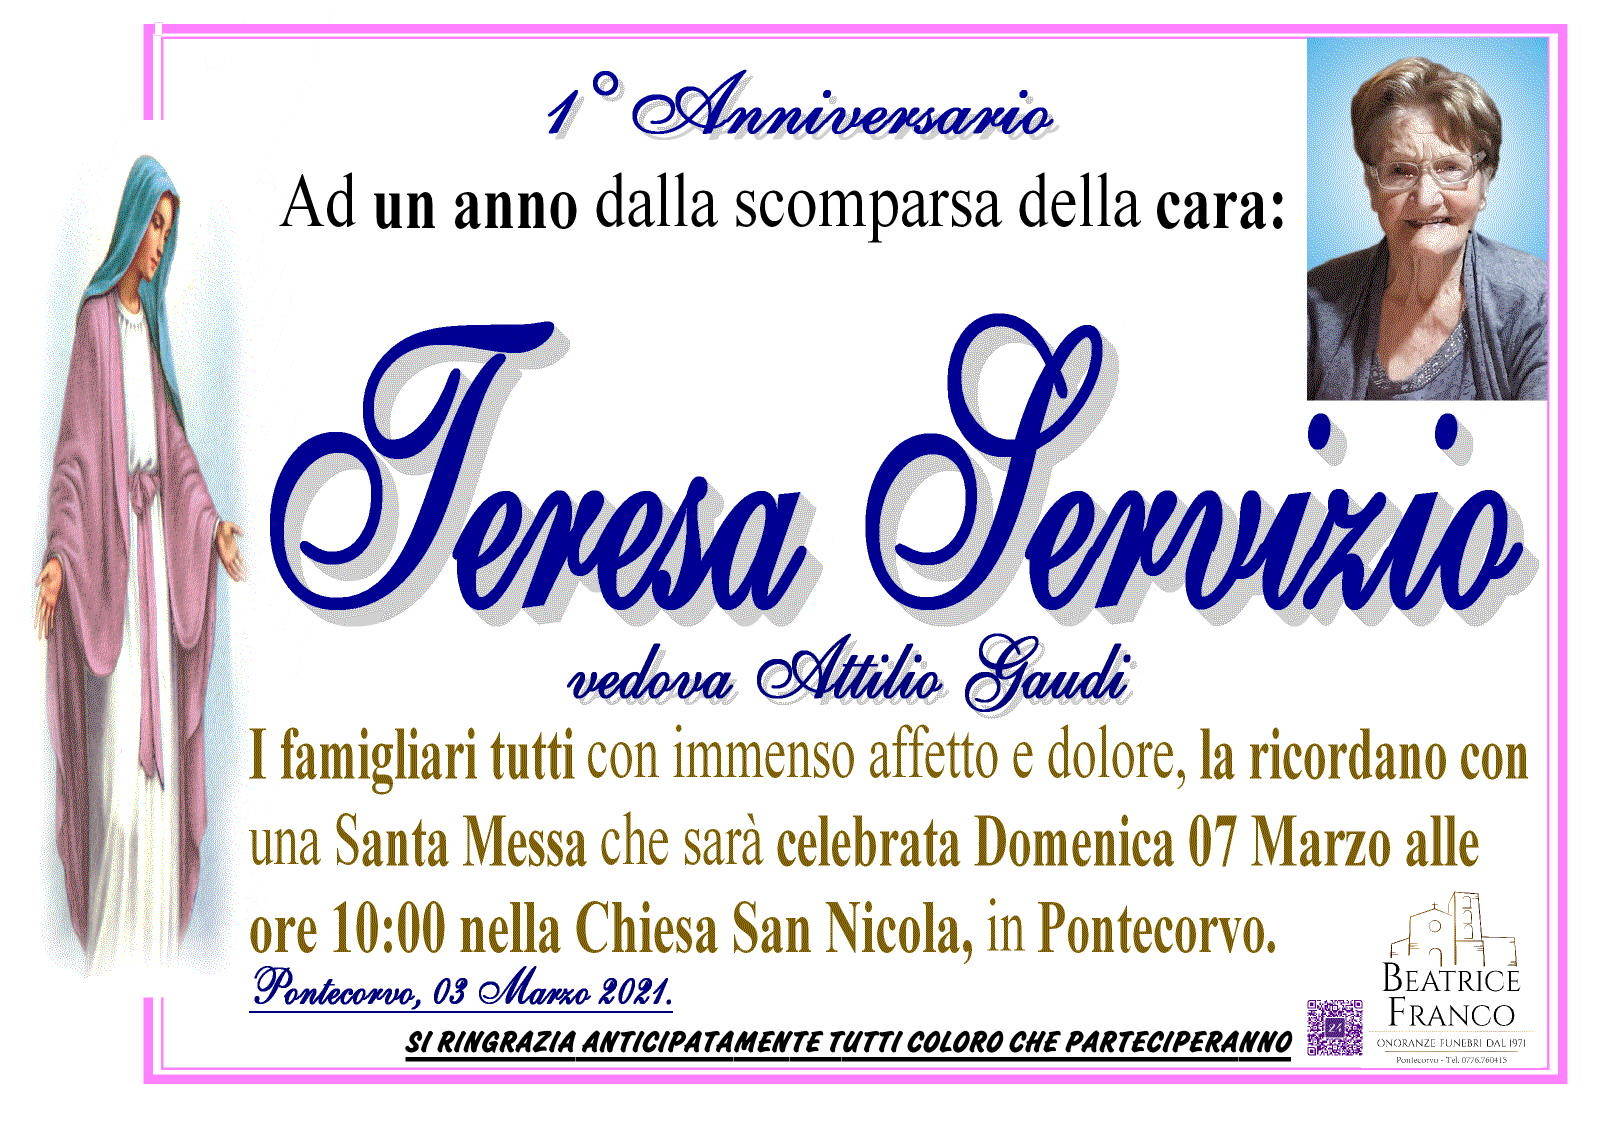 Teresa Servizio